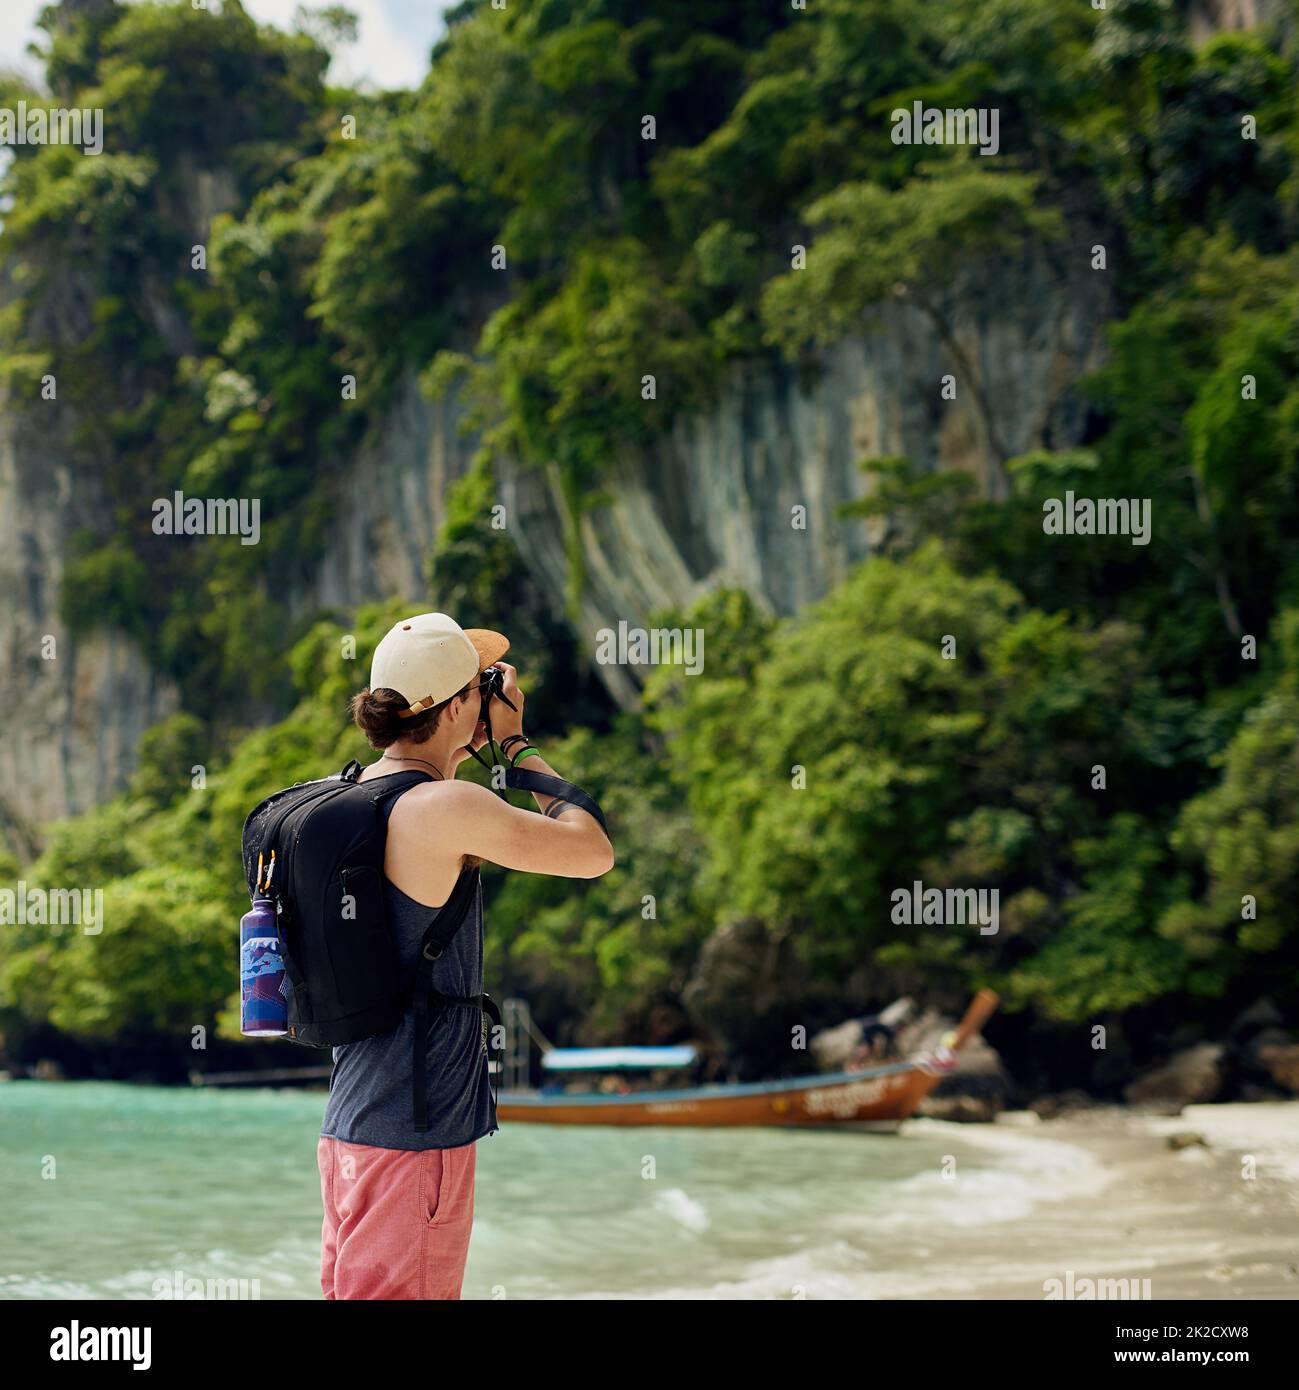 Die Schönheit der Natur einfangen. Ausgeschnittene Aufnahme eines jungen Touristen, der im Urlaub Fotos macht. Stockfoto